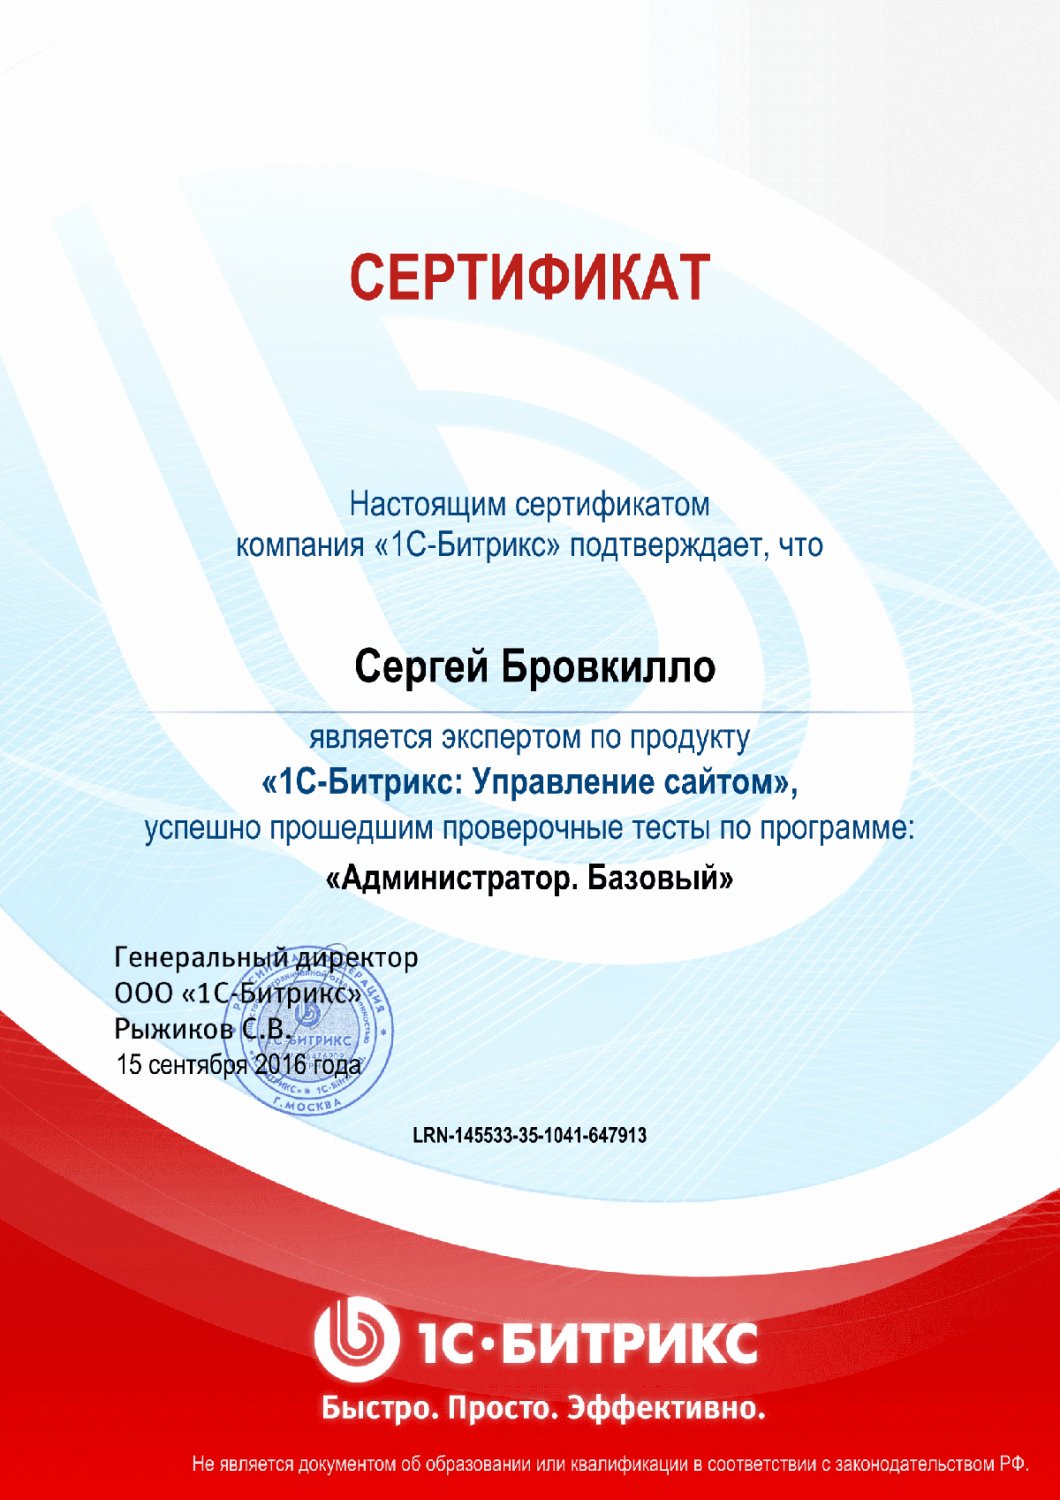 Сертификат эксперта по программе "Администратор. Базовый" в Екатеринбурга